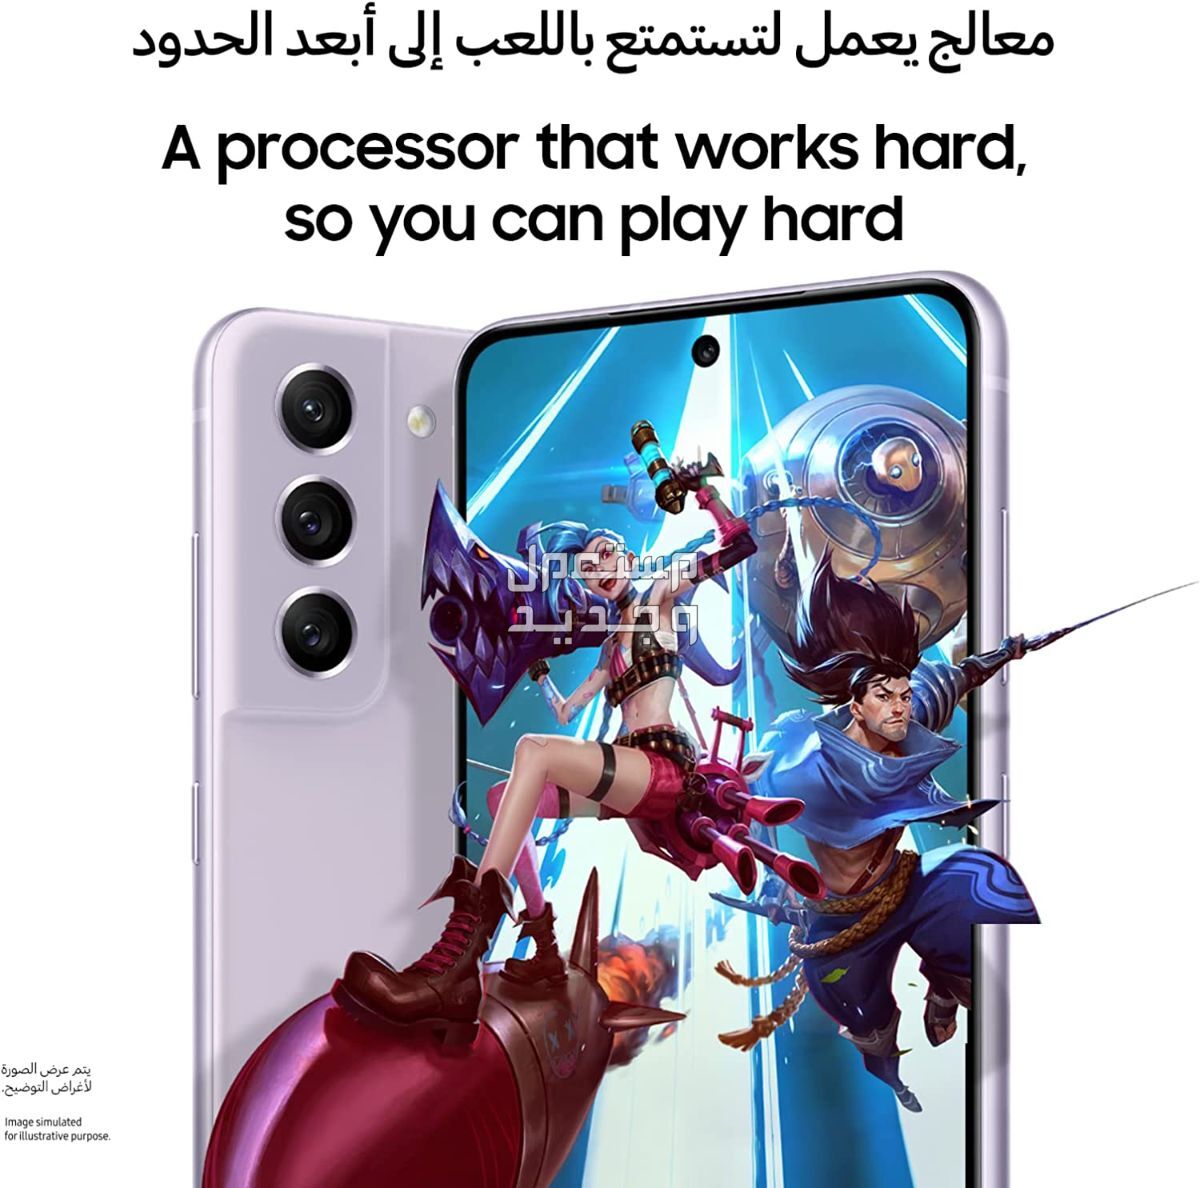 التطور المذهل للهواتف الذكية: إصدار سامسونج الأخير في ليبيا إصدار سامسونج الأخير